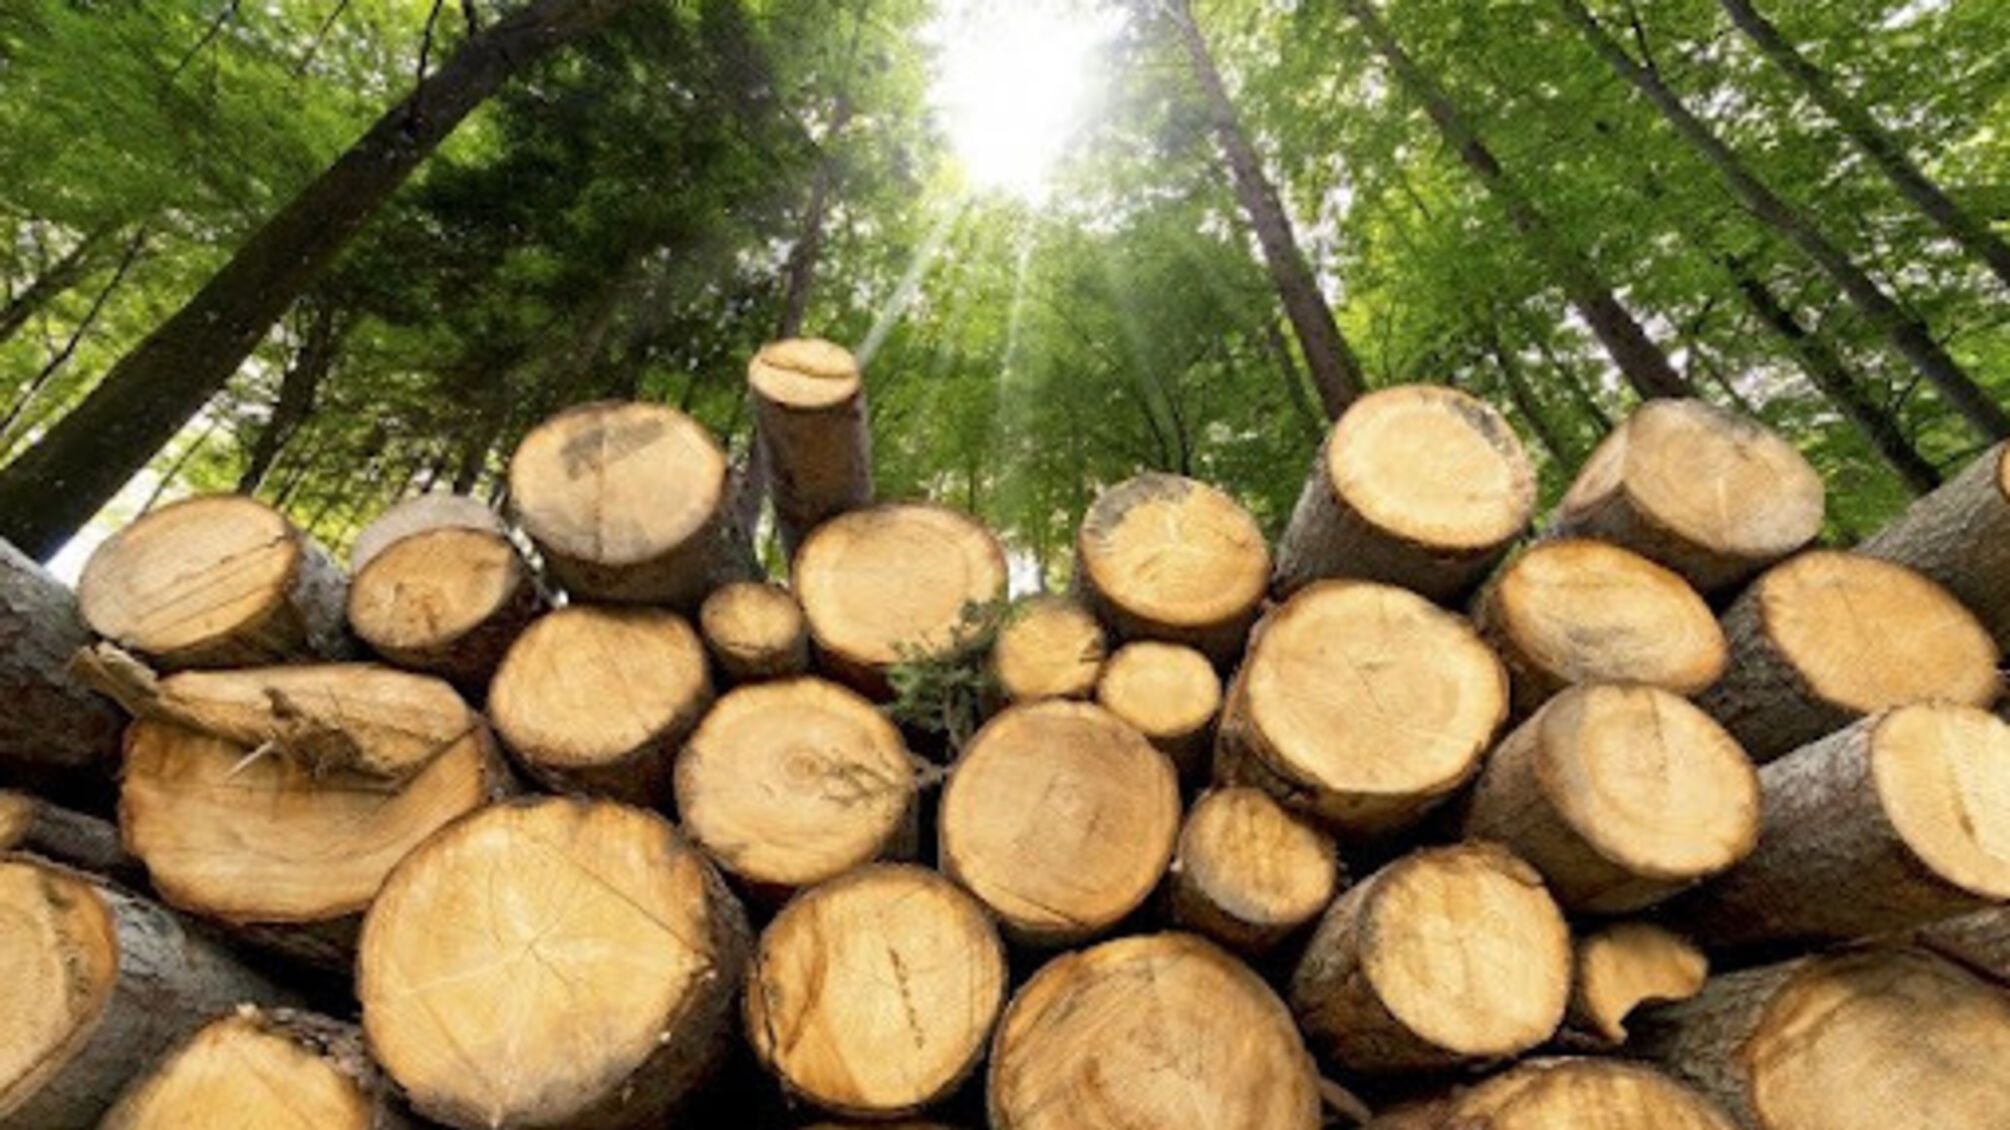 Розтрата державного майна лісопідприємства: на Вінниччині судитимуть організовану групу